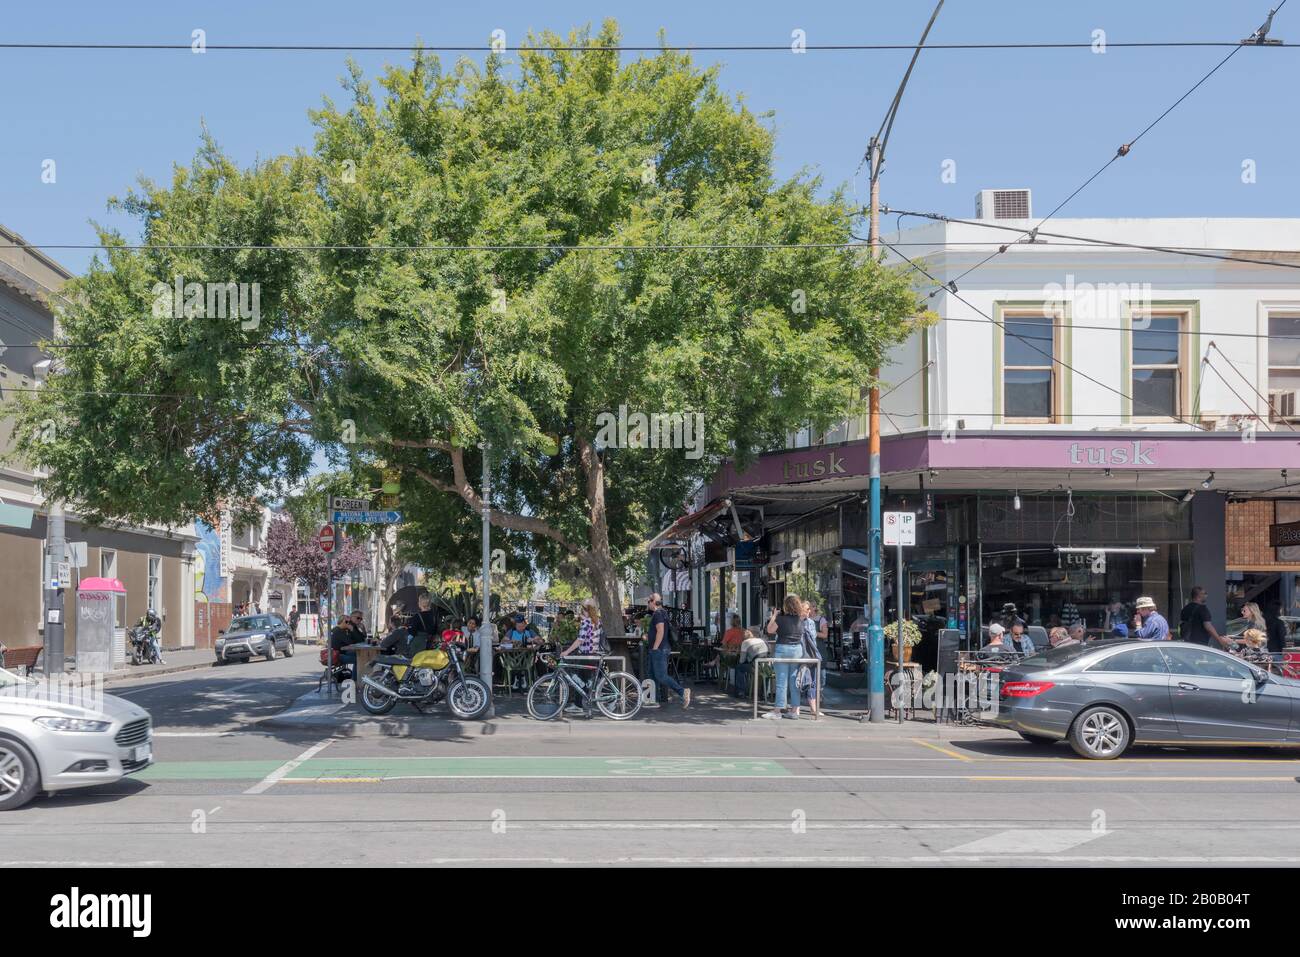 Tusk Cafe Bar sur Chapel Street à Windsor, Melbourne, Victoria, Australie sert du café et des repas à l'intérieur et à l'extérieur sous un immense arbre ombragé Banque D'Images